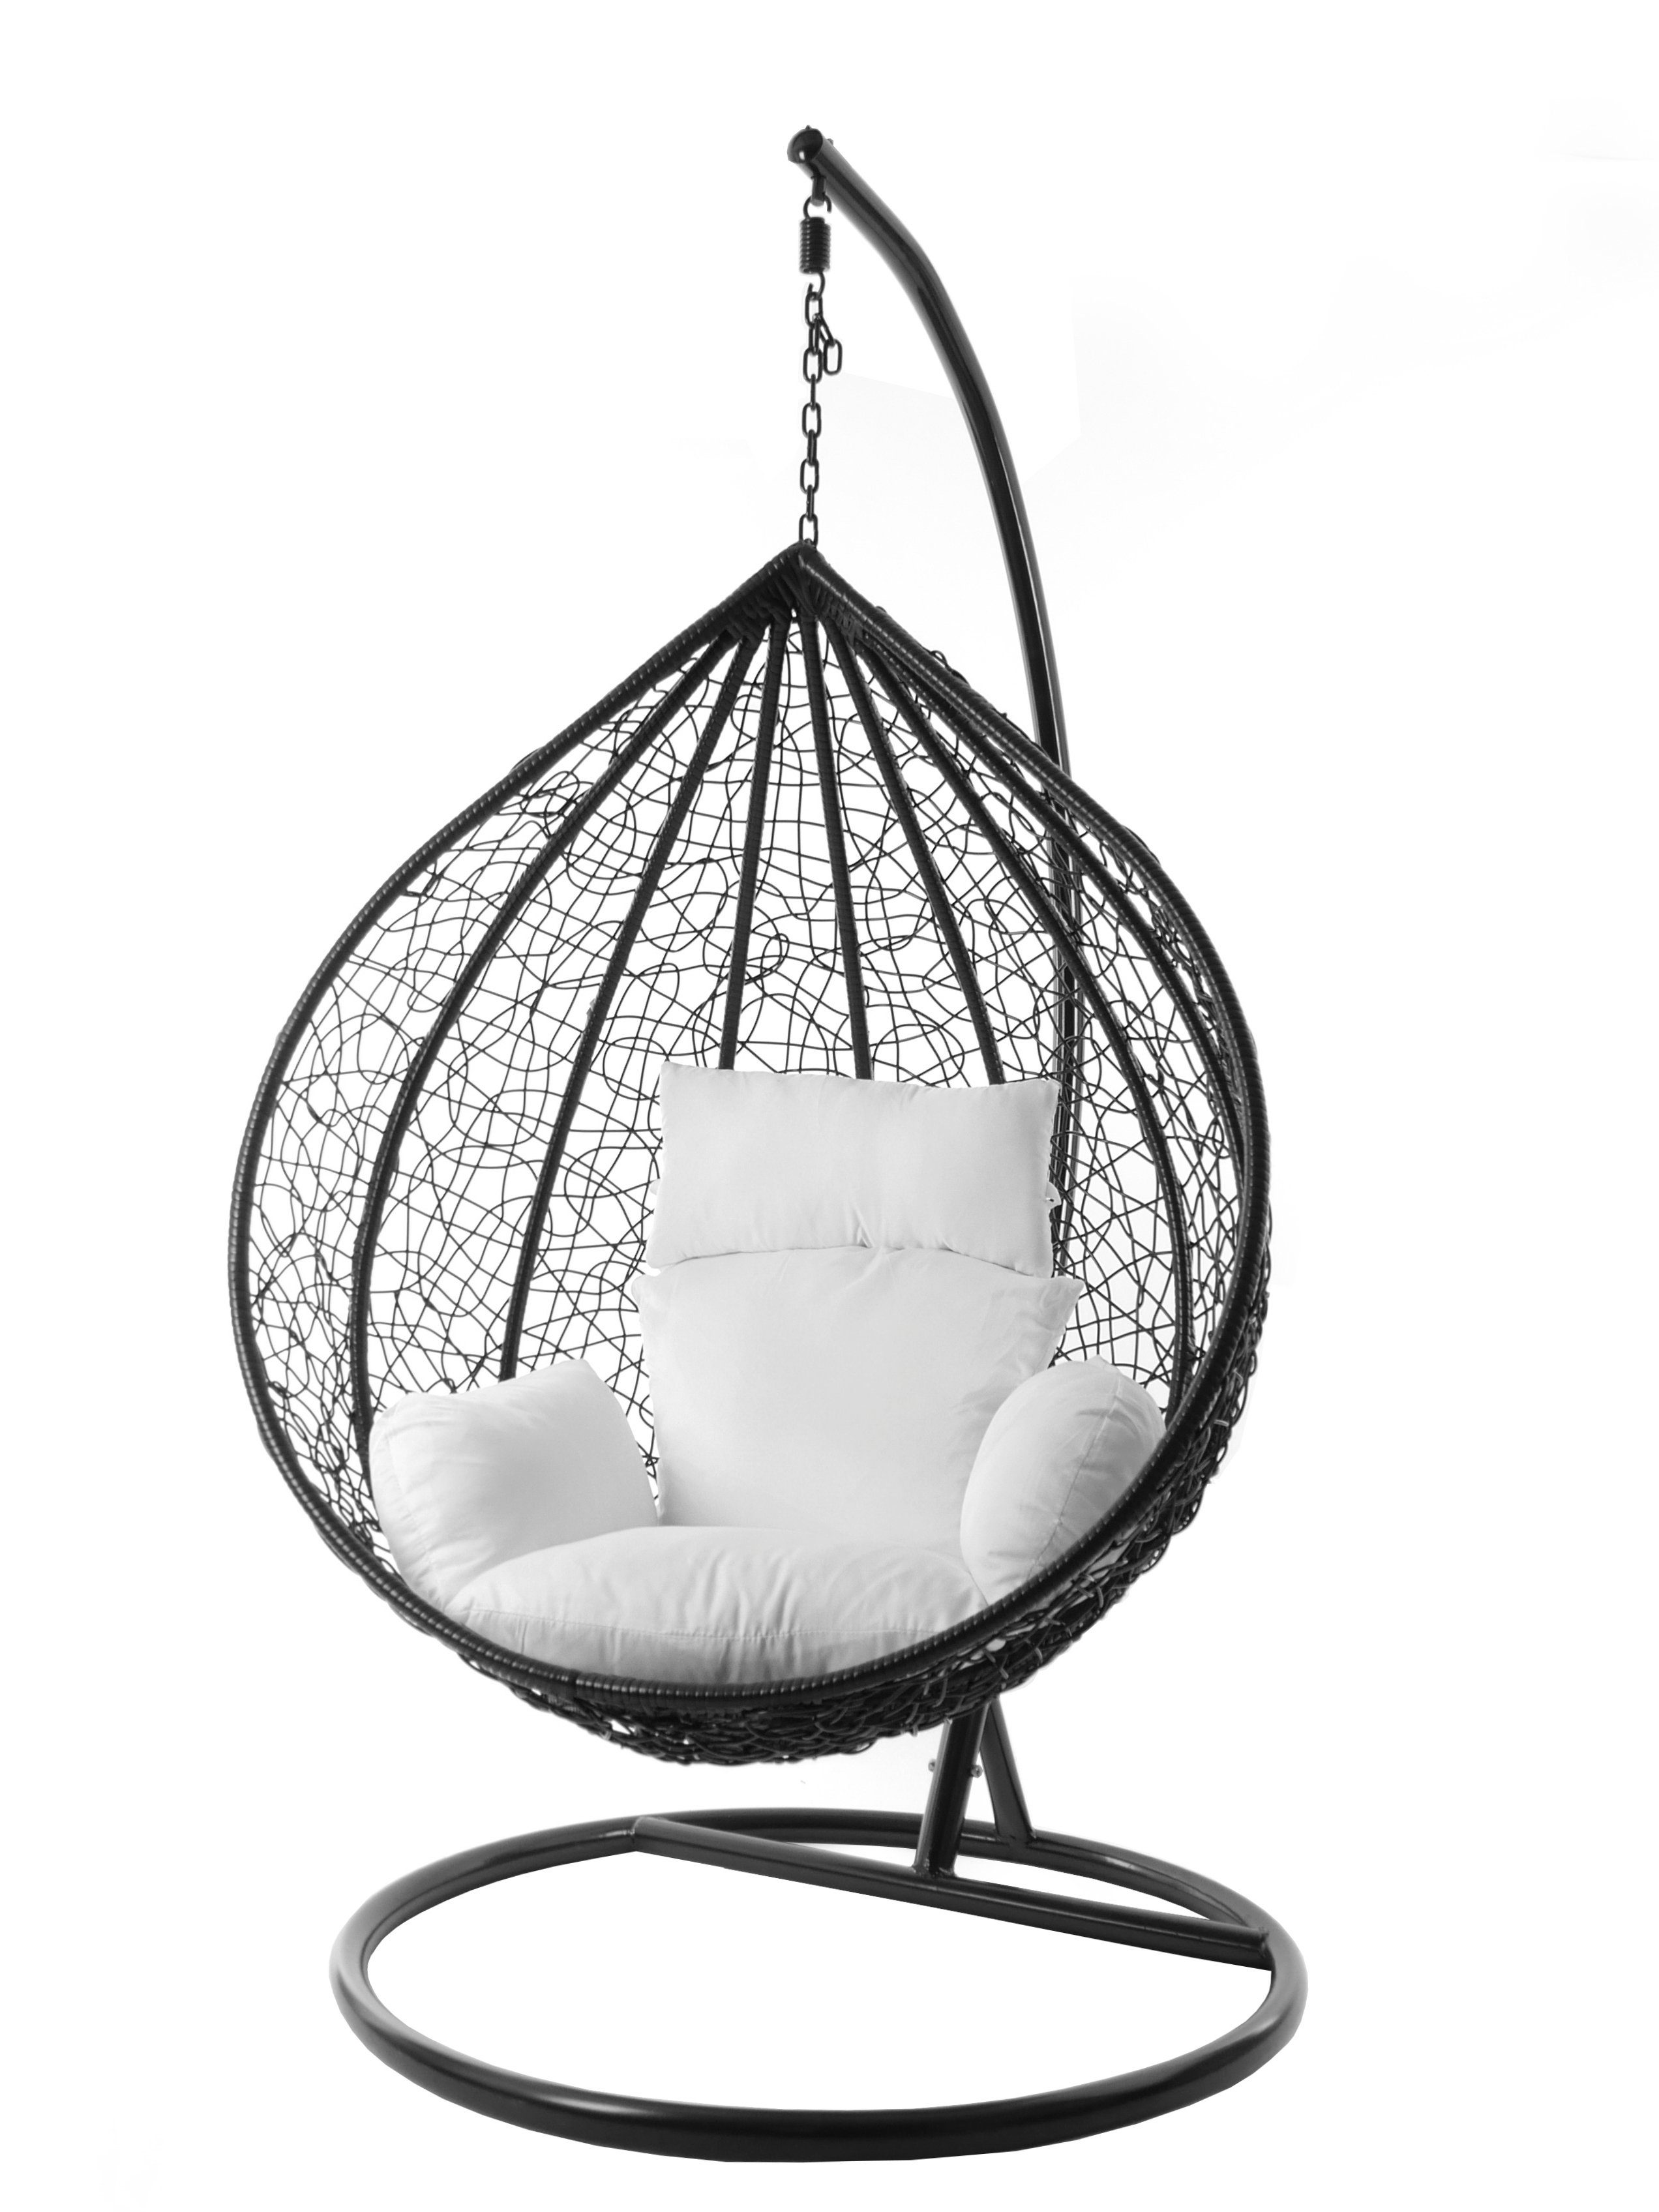 KIDEO Hängesessel Hängesessel MANACOR schwarz, inklusive, weiß edel, snow) XXL Farben (1000 Chair, verschiedene und Gestell Swing Nest-Kissen, Kissen